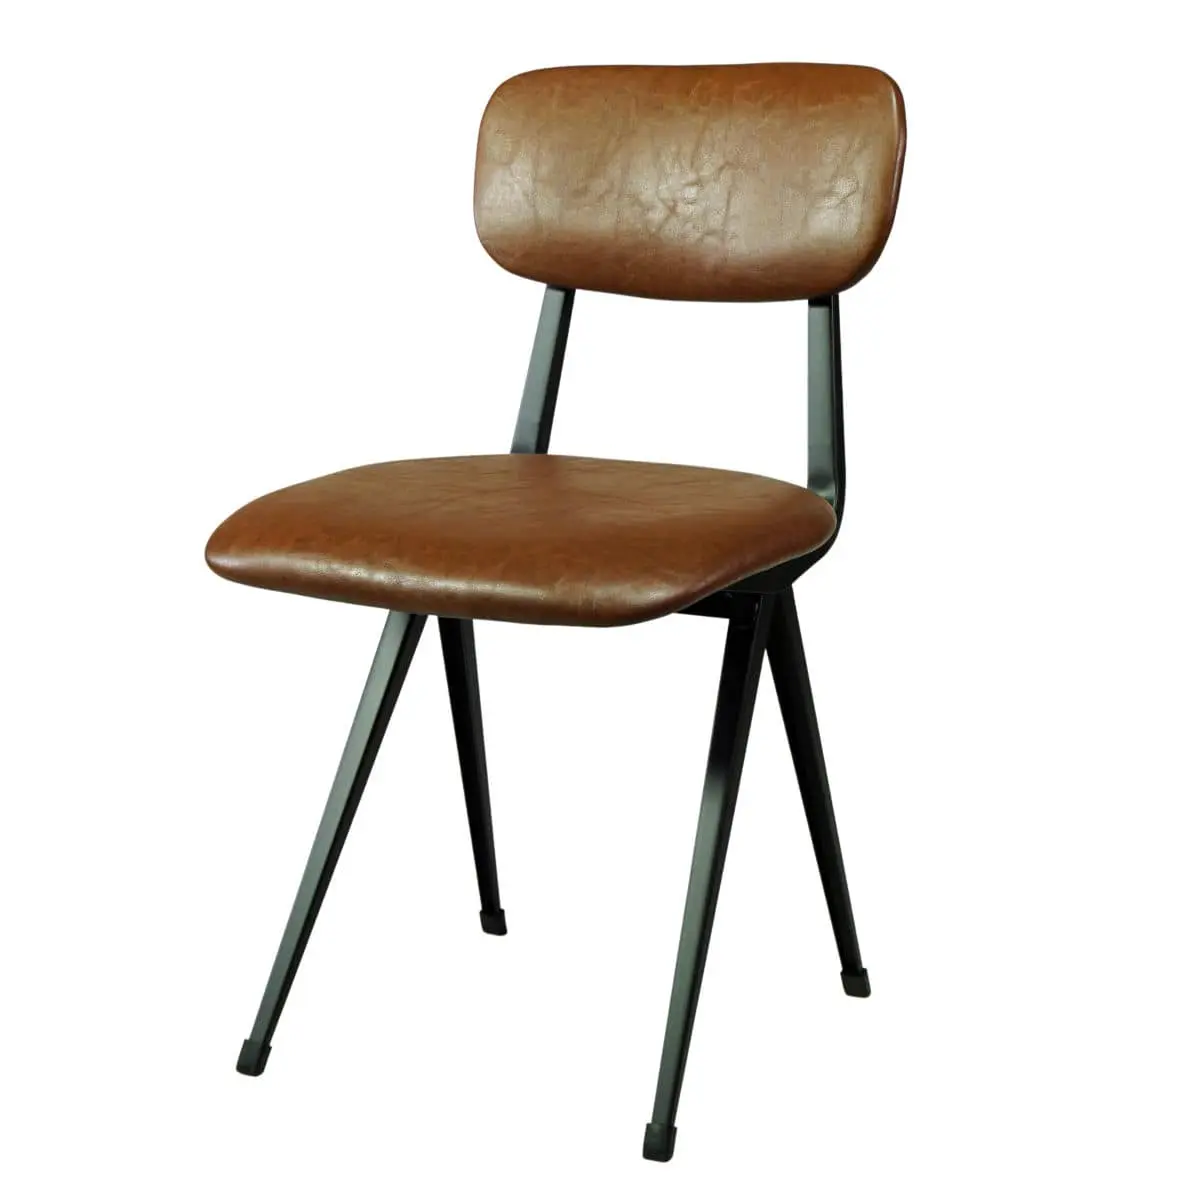 Stuhl gepolstert braun für Esszimmer, Restaurant, Cafe